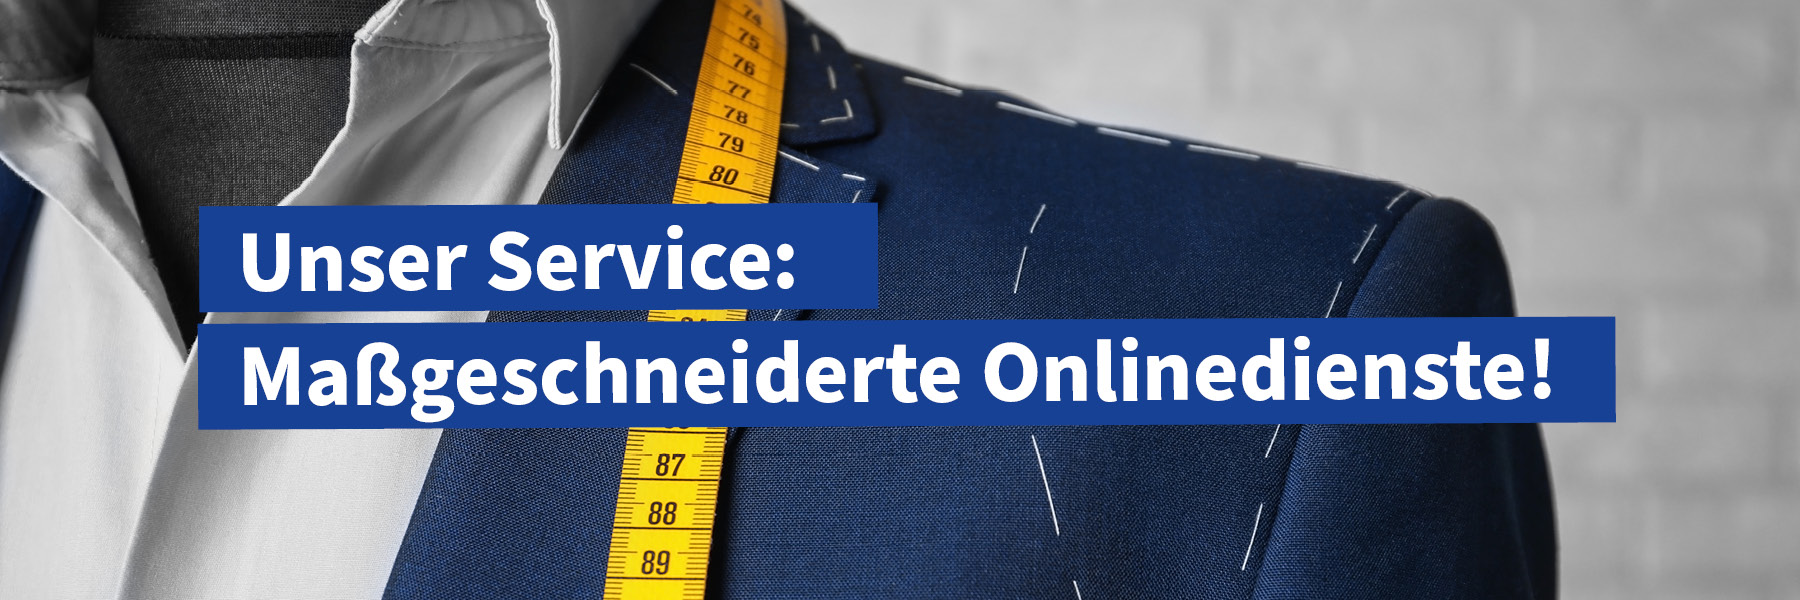 Unser Service: Mageschneiderte Onlinedienste!